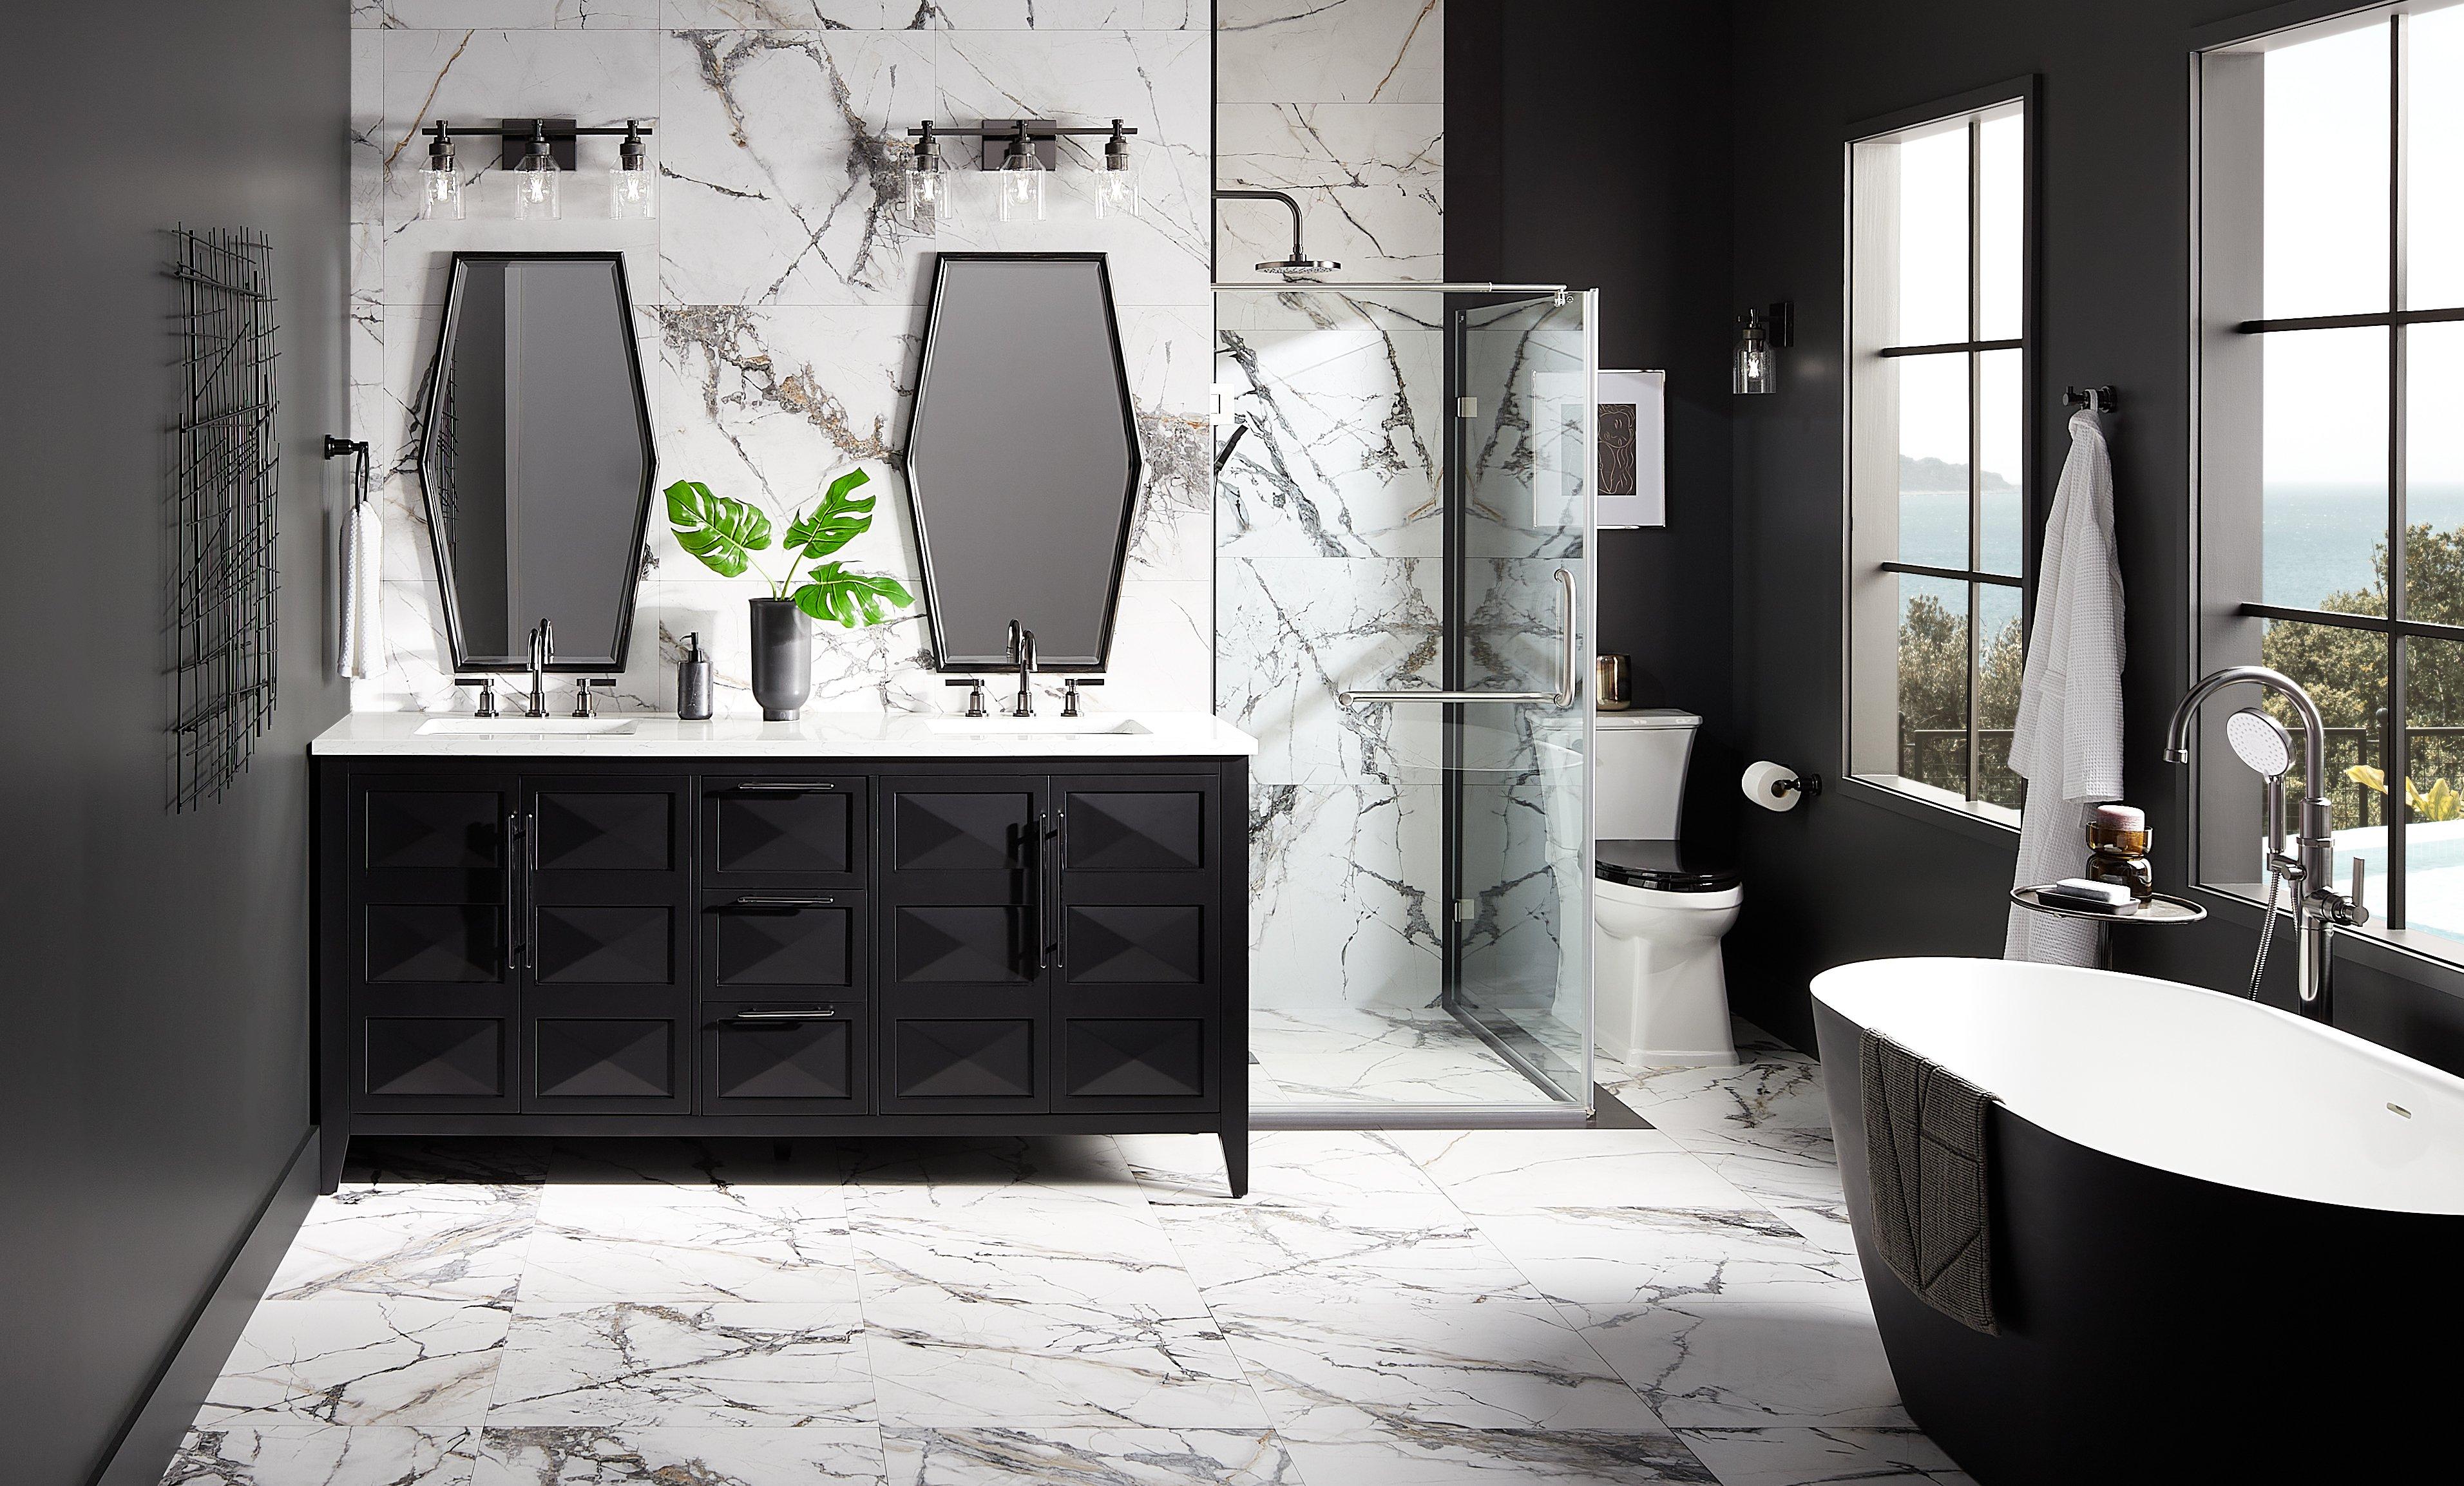 72" Holmesdale Vanity - Black, Greyfield Widespread Bathroom Faucet, Freestanding Tub Faucet, Towel Holder - Gunmetal